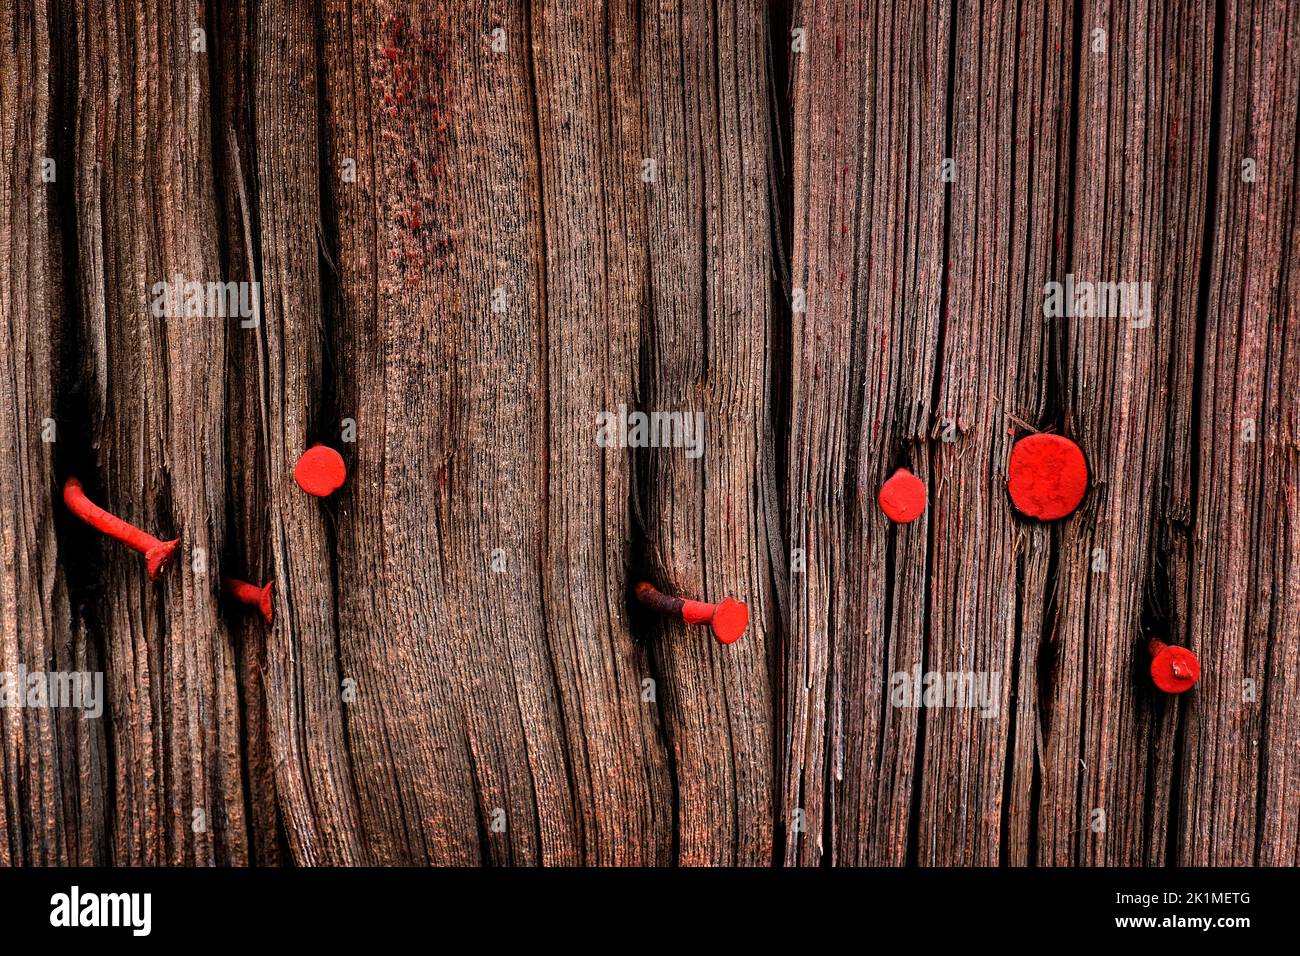 Detalle de la vieja pared de madera envejecida con ventanas y clavos de pintura roja Foto de stock